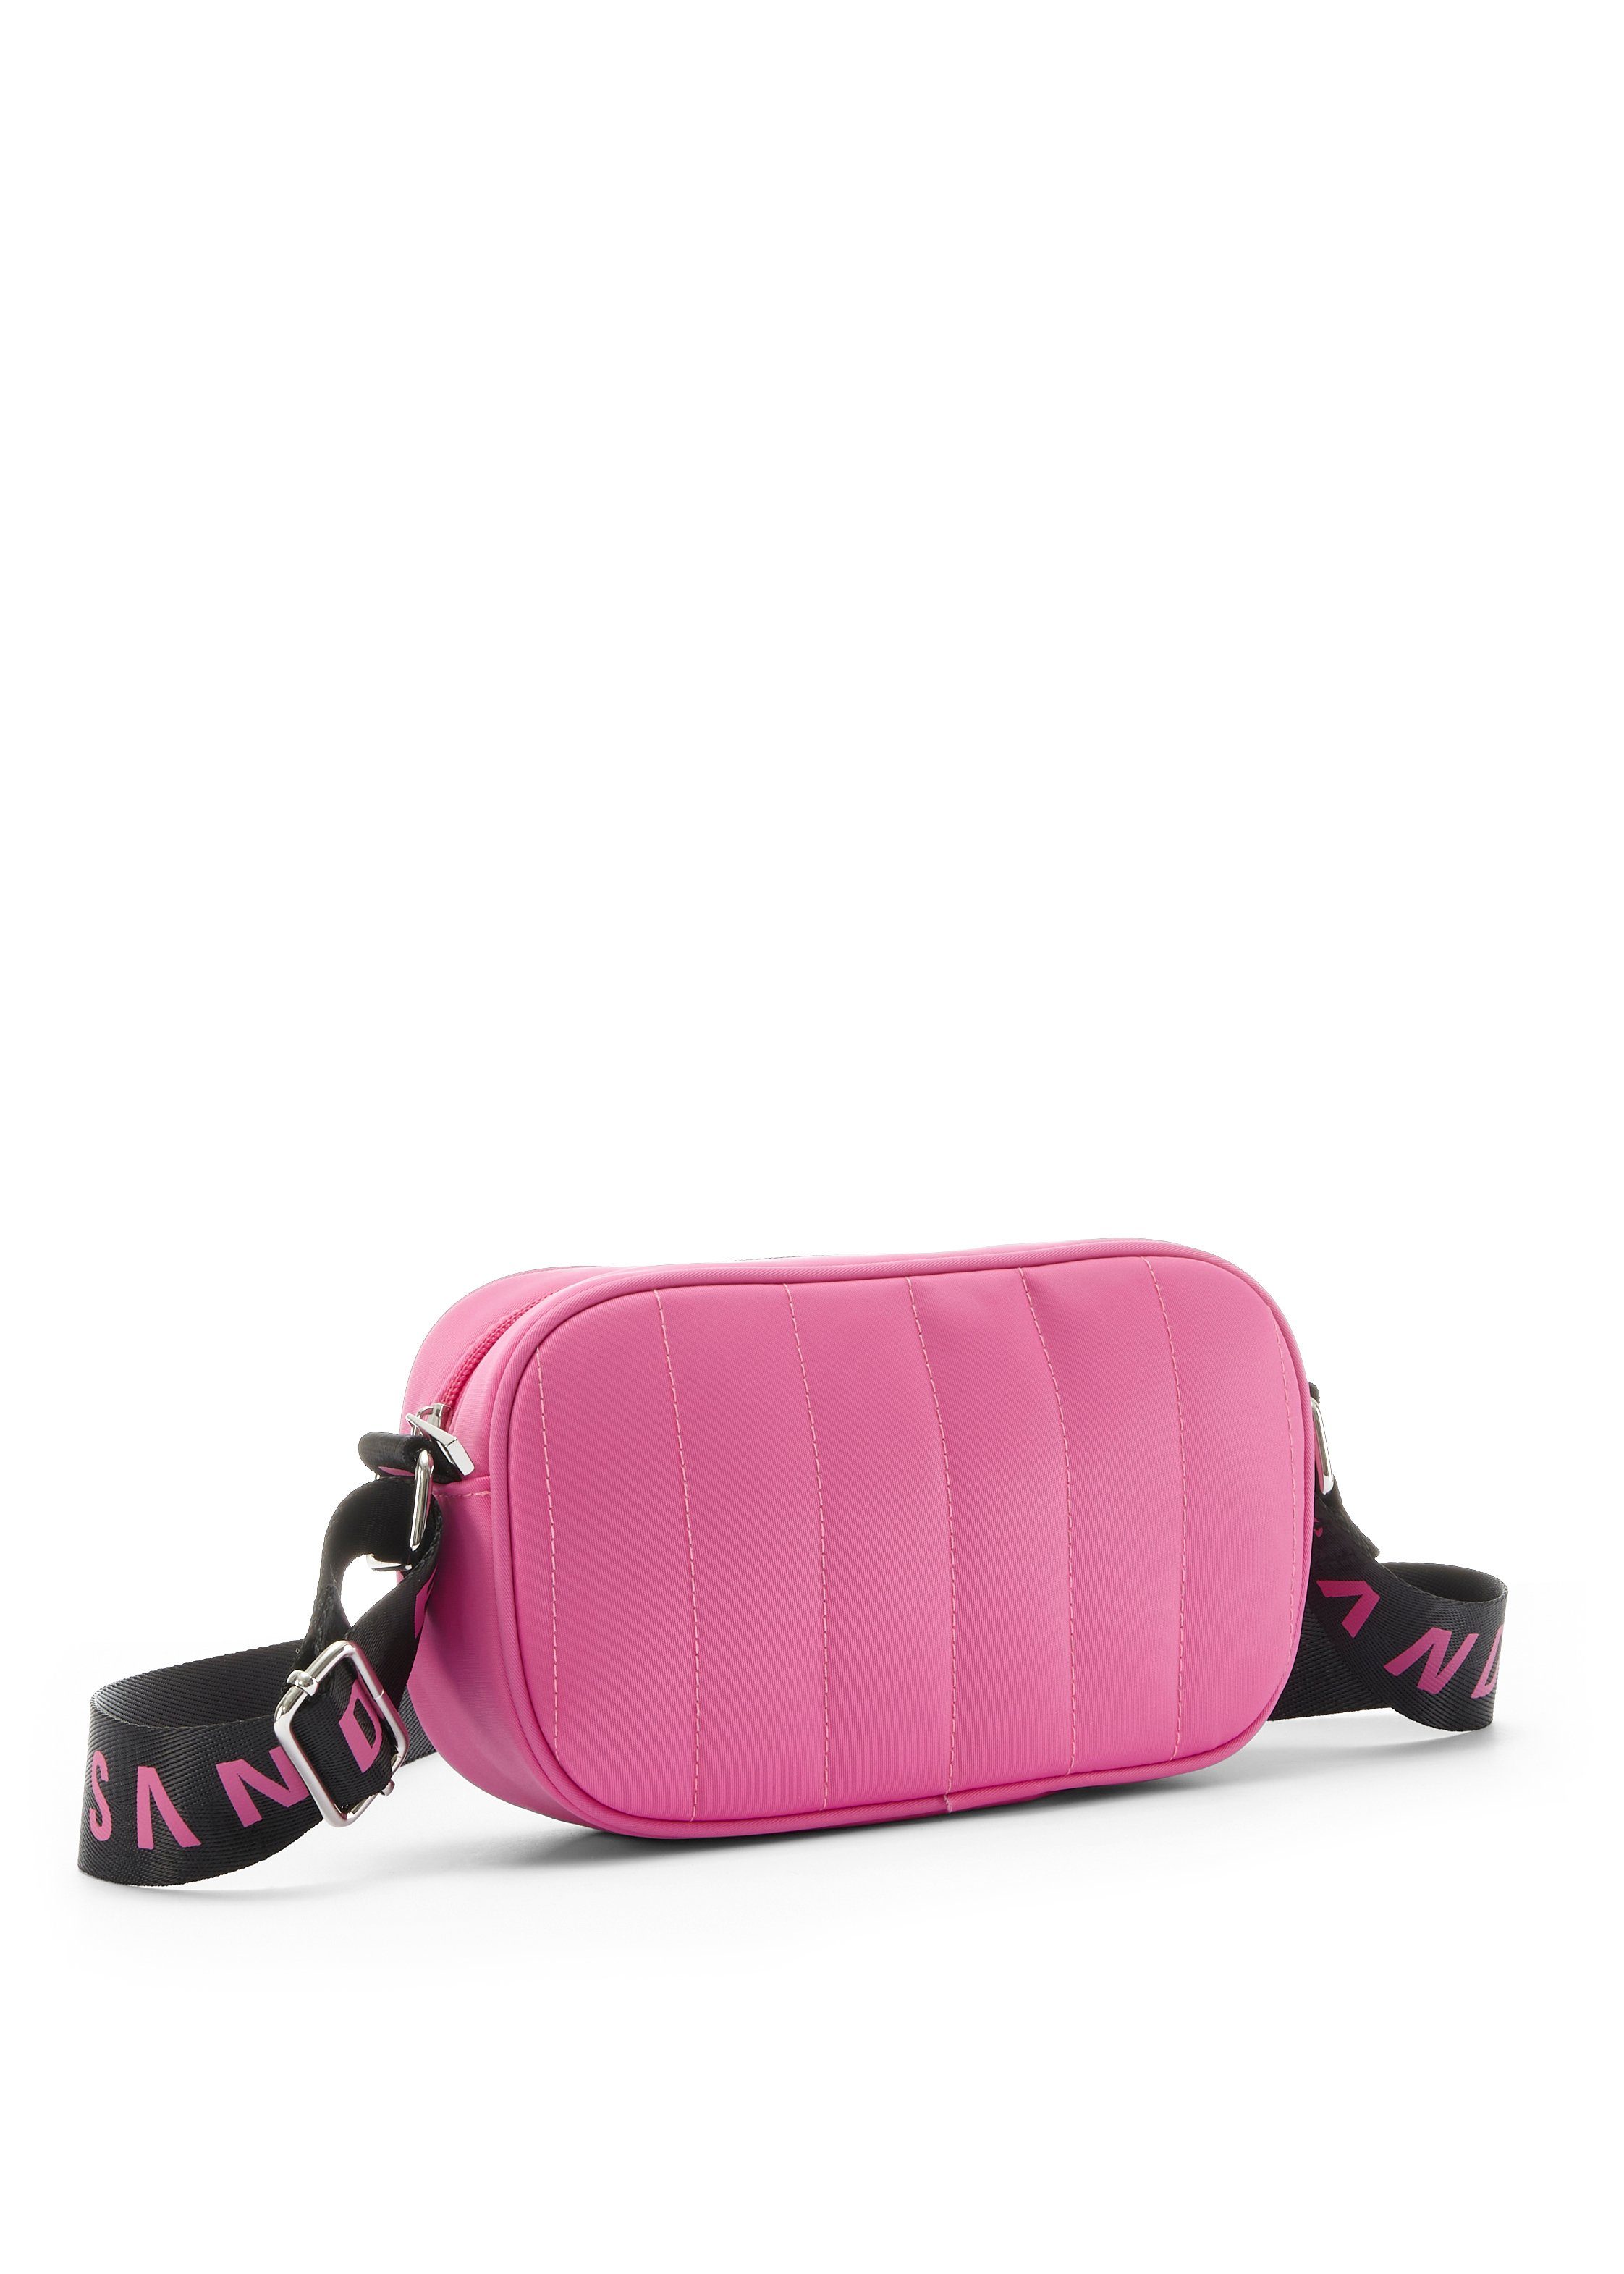 Steppung Elbsand Handtasche Minibag, VEGAN pink mit Umhängetasche